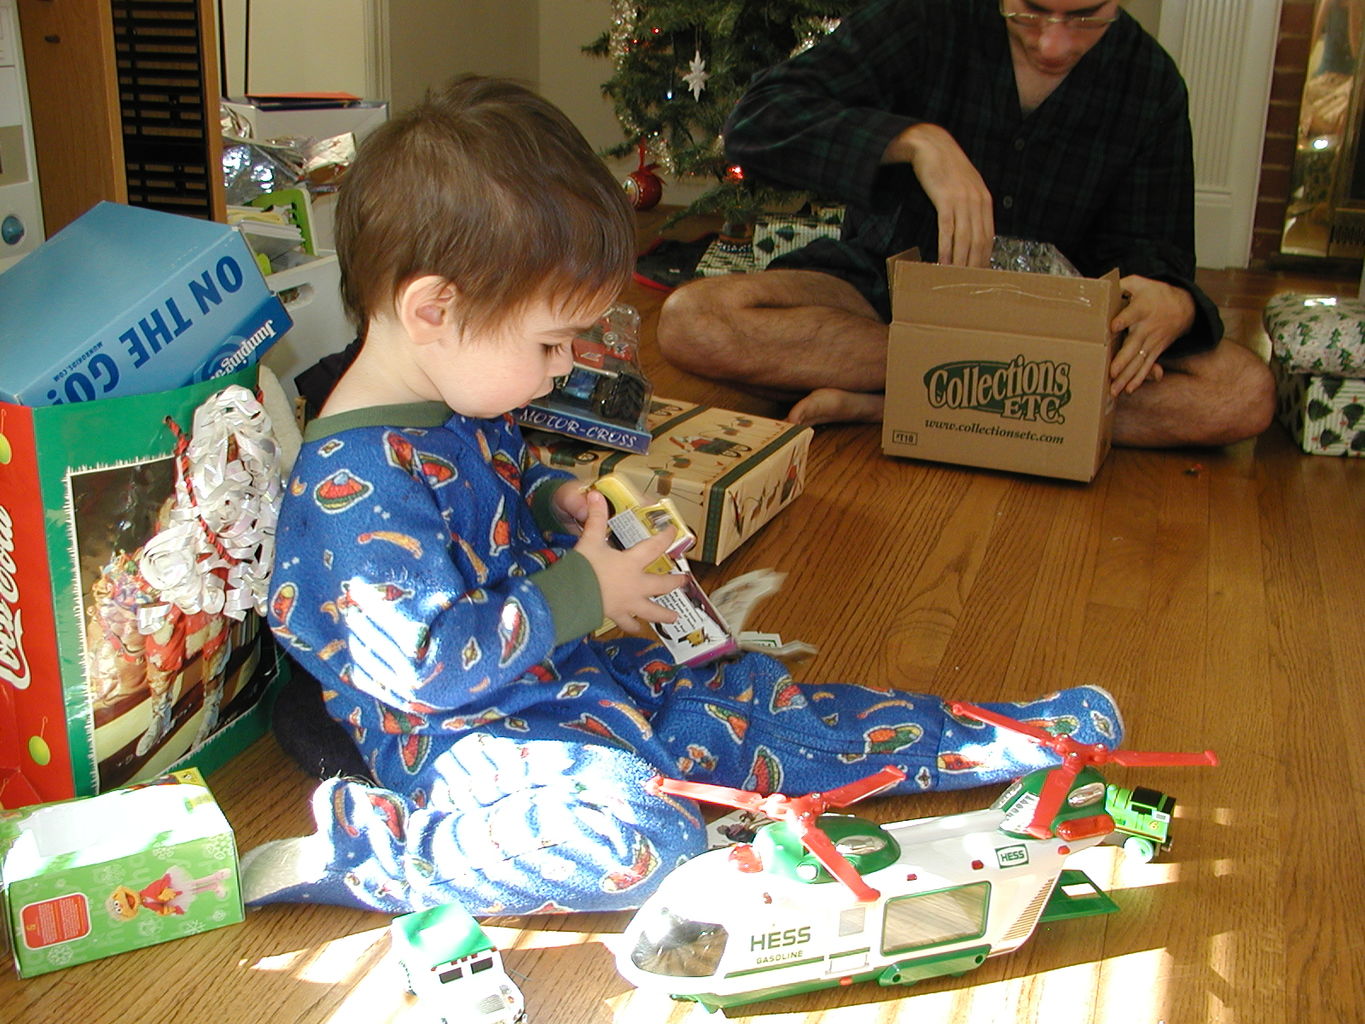 Christmas 2004
